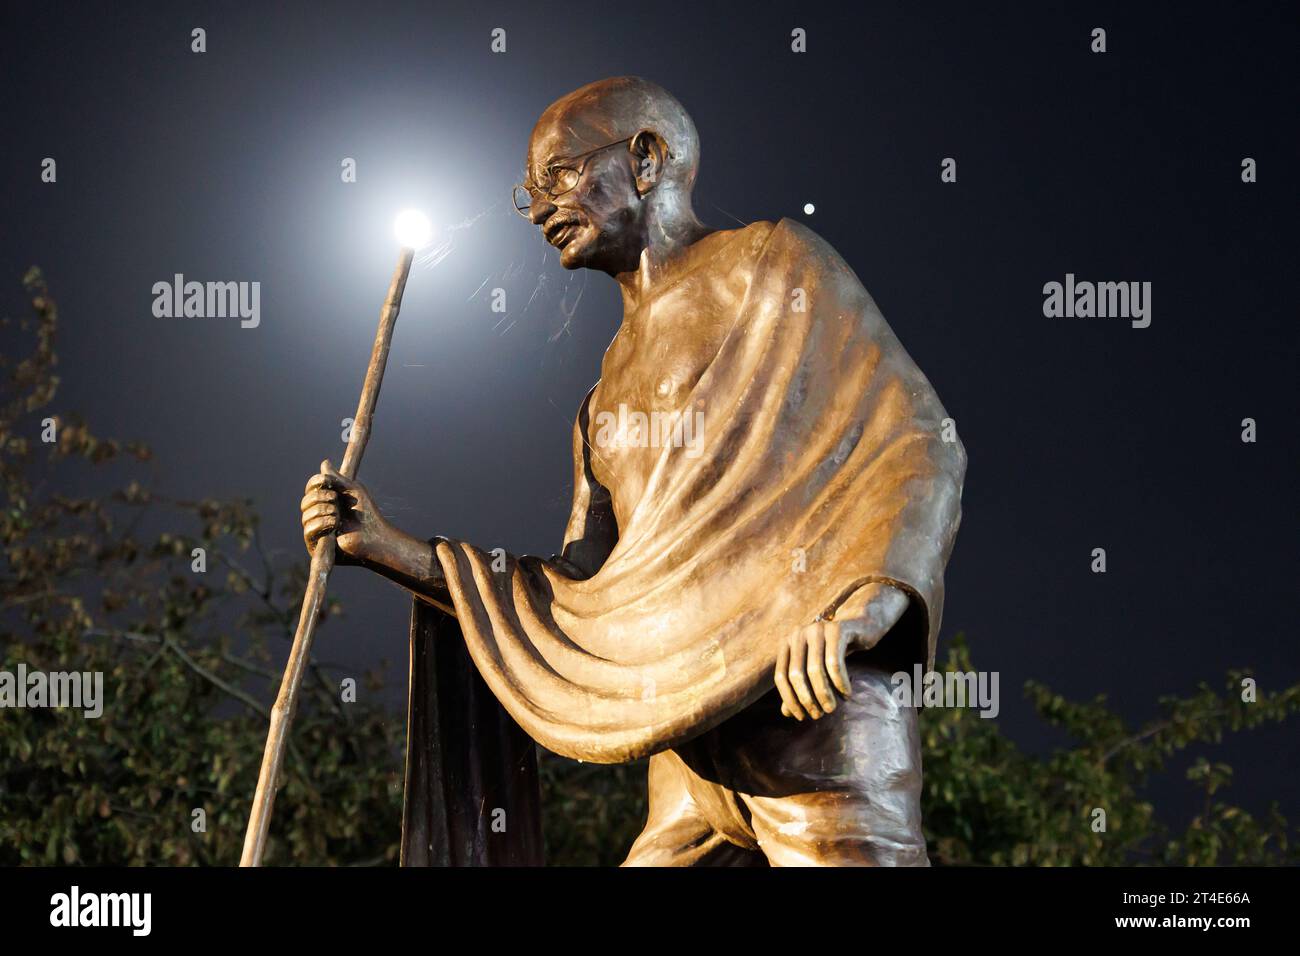 Die Statue von Mahatma Gandhi an der Belgrave Road, Leicester. Das Foto wurde nachts aufgenommen, während das Licht des Mondes auf der Statue leuchtete. Die Statue war Schauplatz von Protesten gegen die Entfernung der Statue. Die Statue befindet sich neben der Goldenen Meile, dem Bereich, in dem jedes Jahr die wichtigsten Diwali-Feierlichkeiten stattfinden. Stockfoto